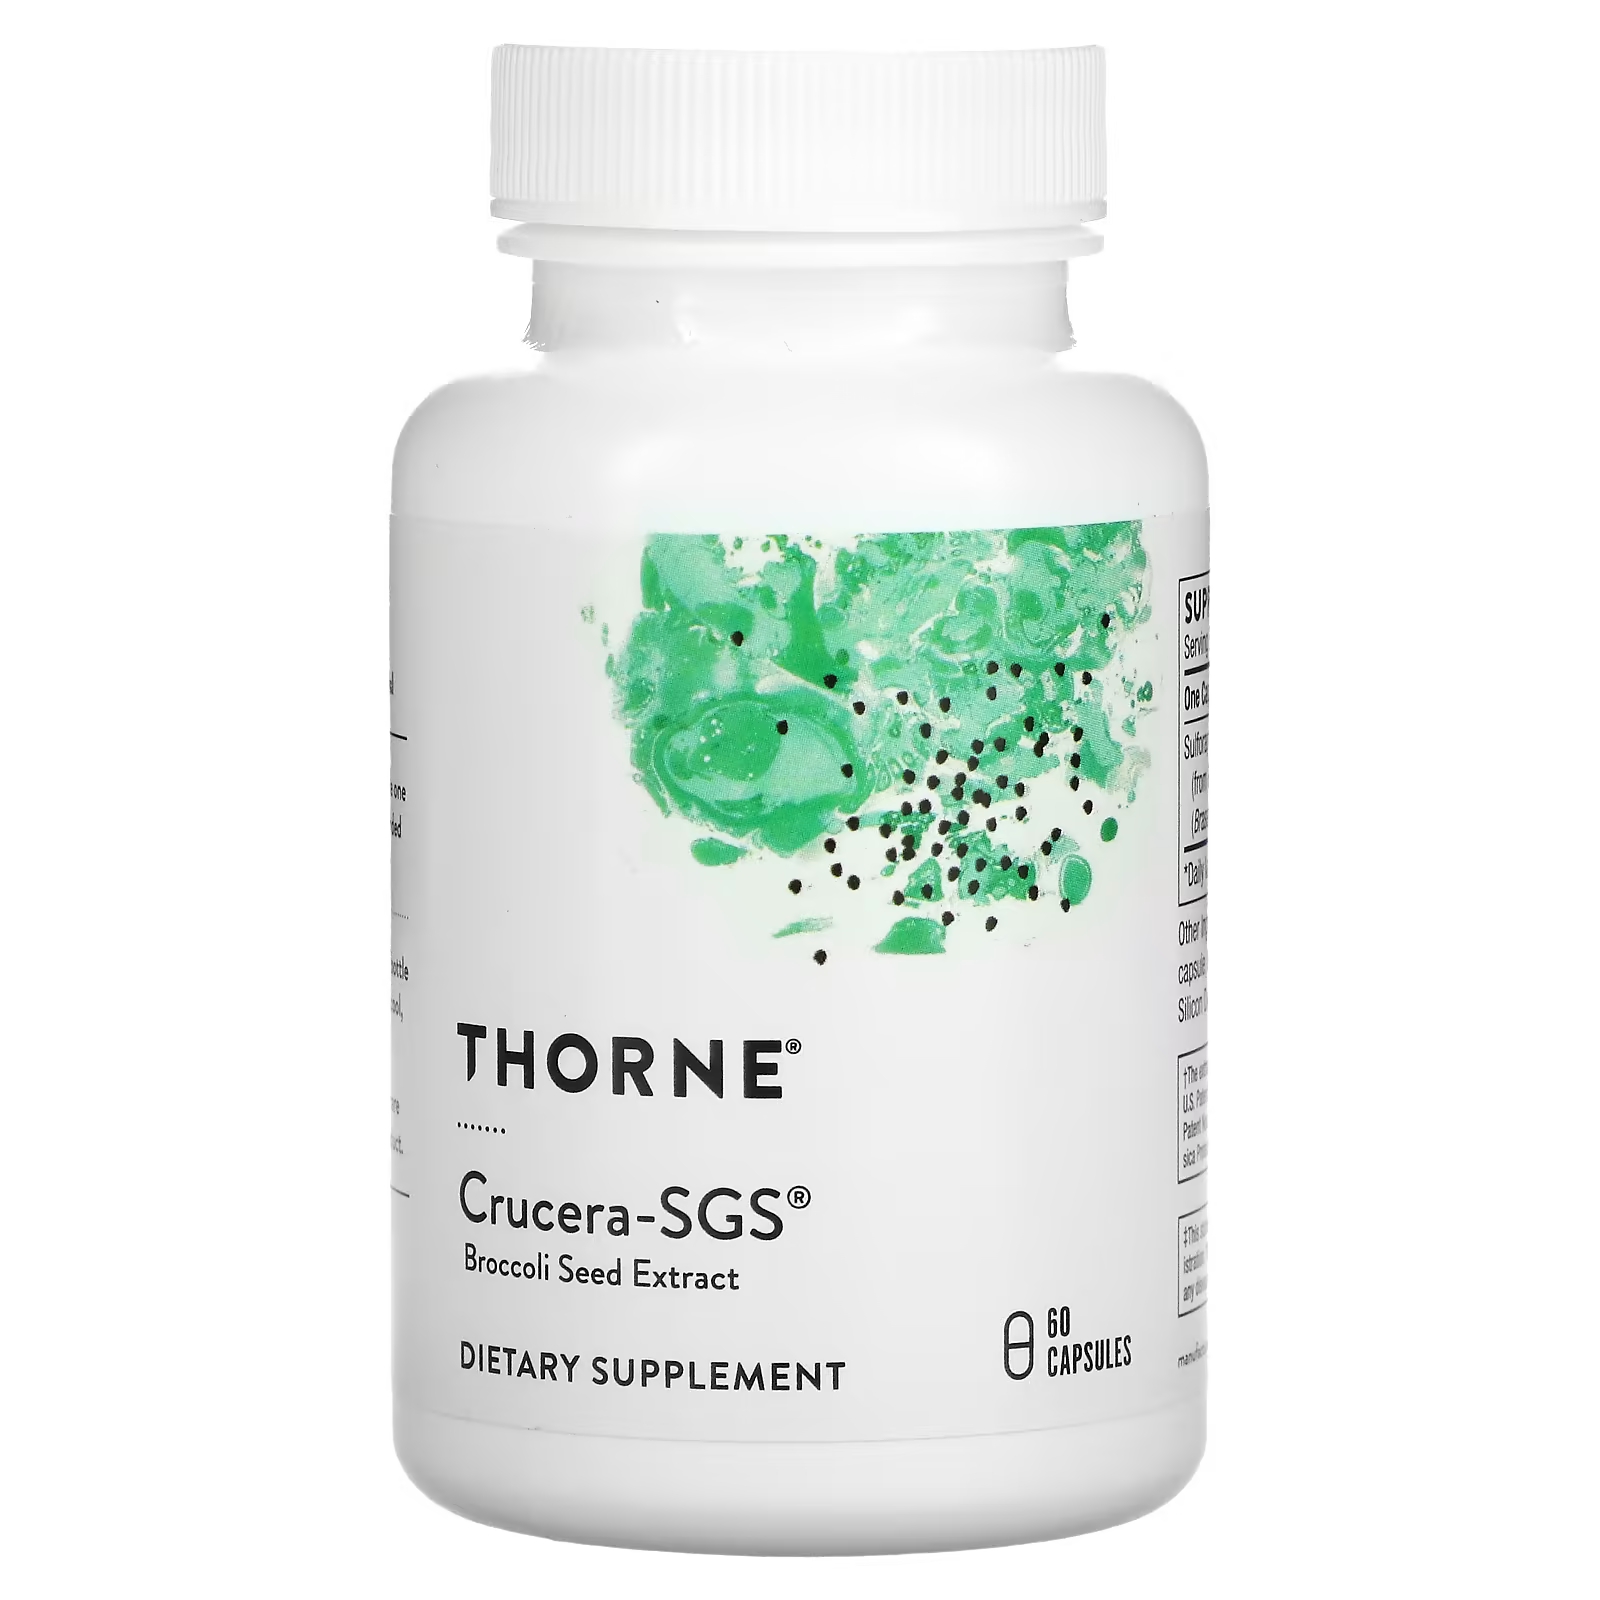 Пищевая добавка Thorne Crucera-SGS с экстратом семян броколи, 60 капсул